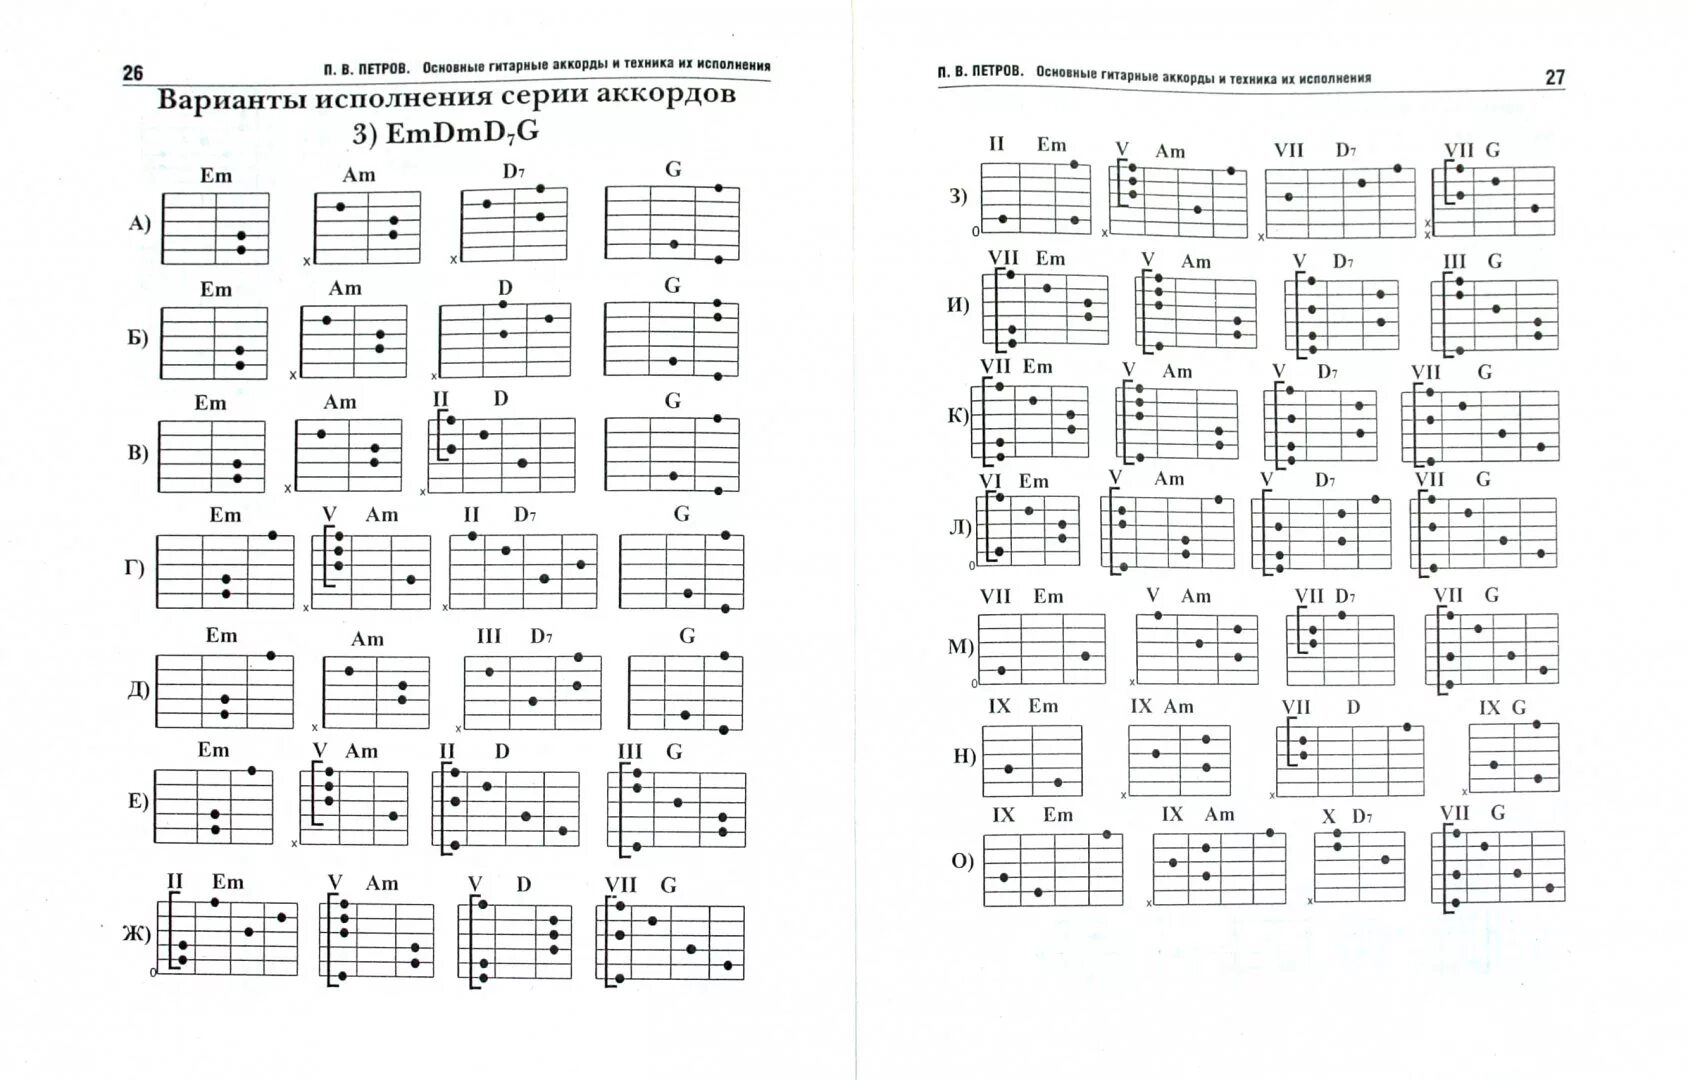 Гитара для начинающих книга. Таблица аккордов для гитары 6 струн для начинающих. Гитарные аккорды таблица для начинающих. Аккорды на 6 струнной гитаре. Таблица простых аккордов для гитары 6 струн.